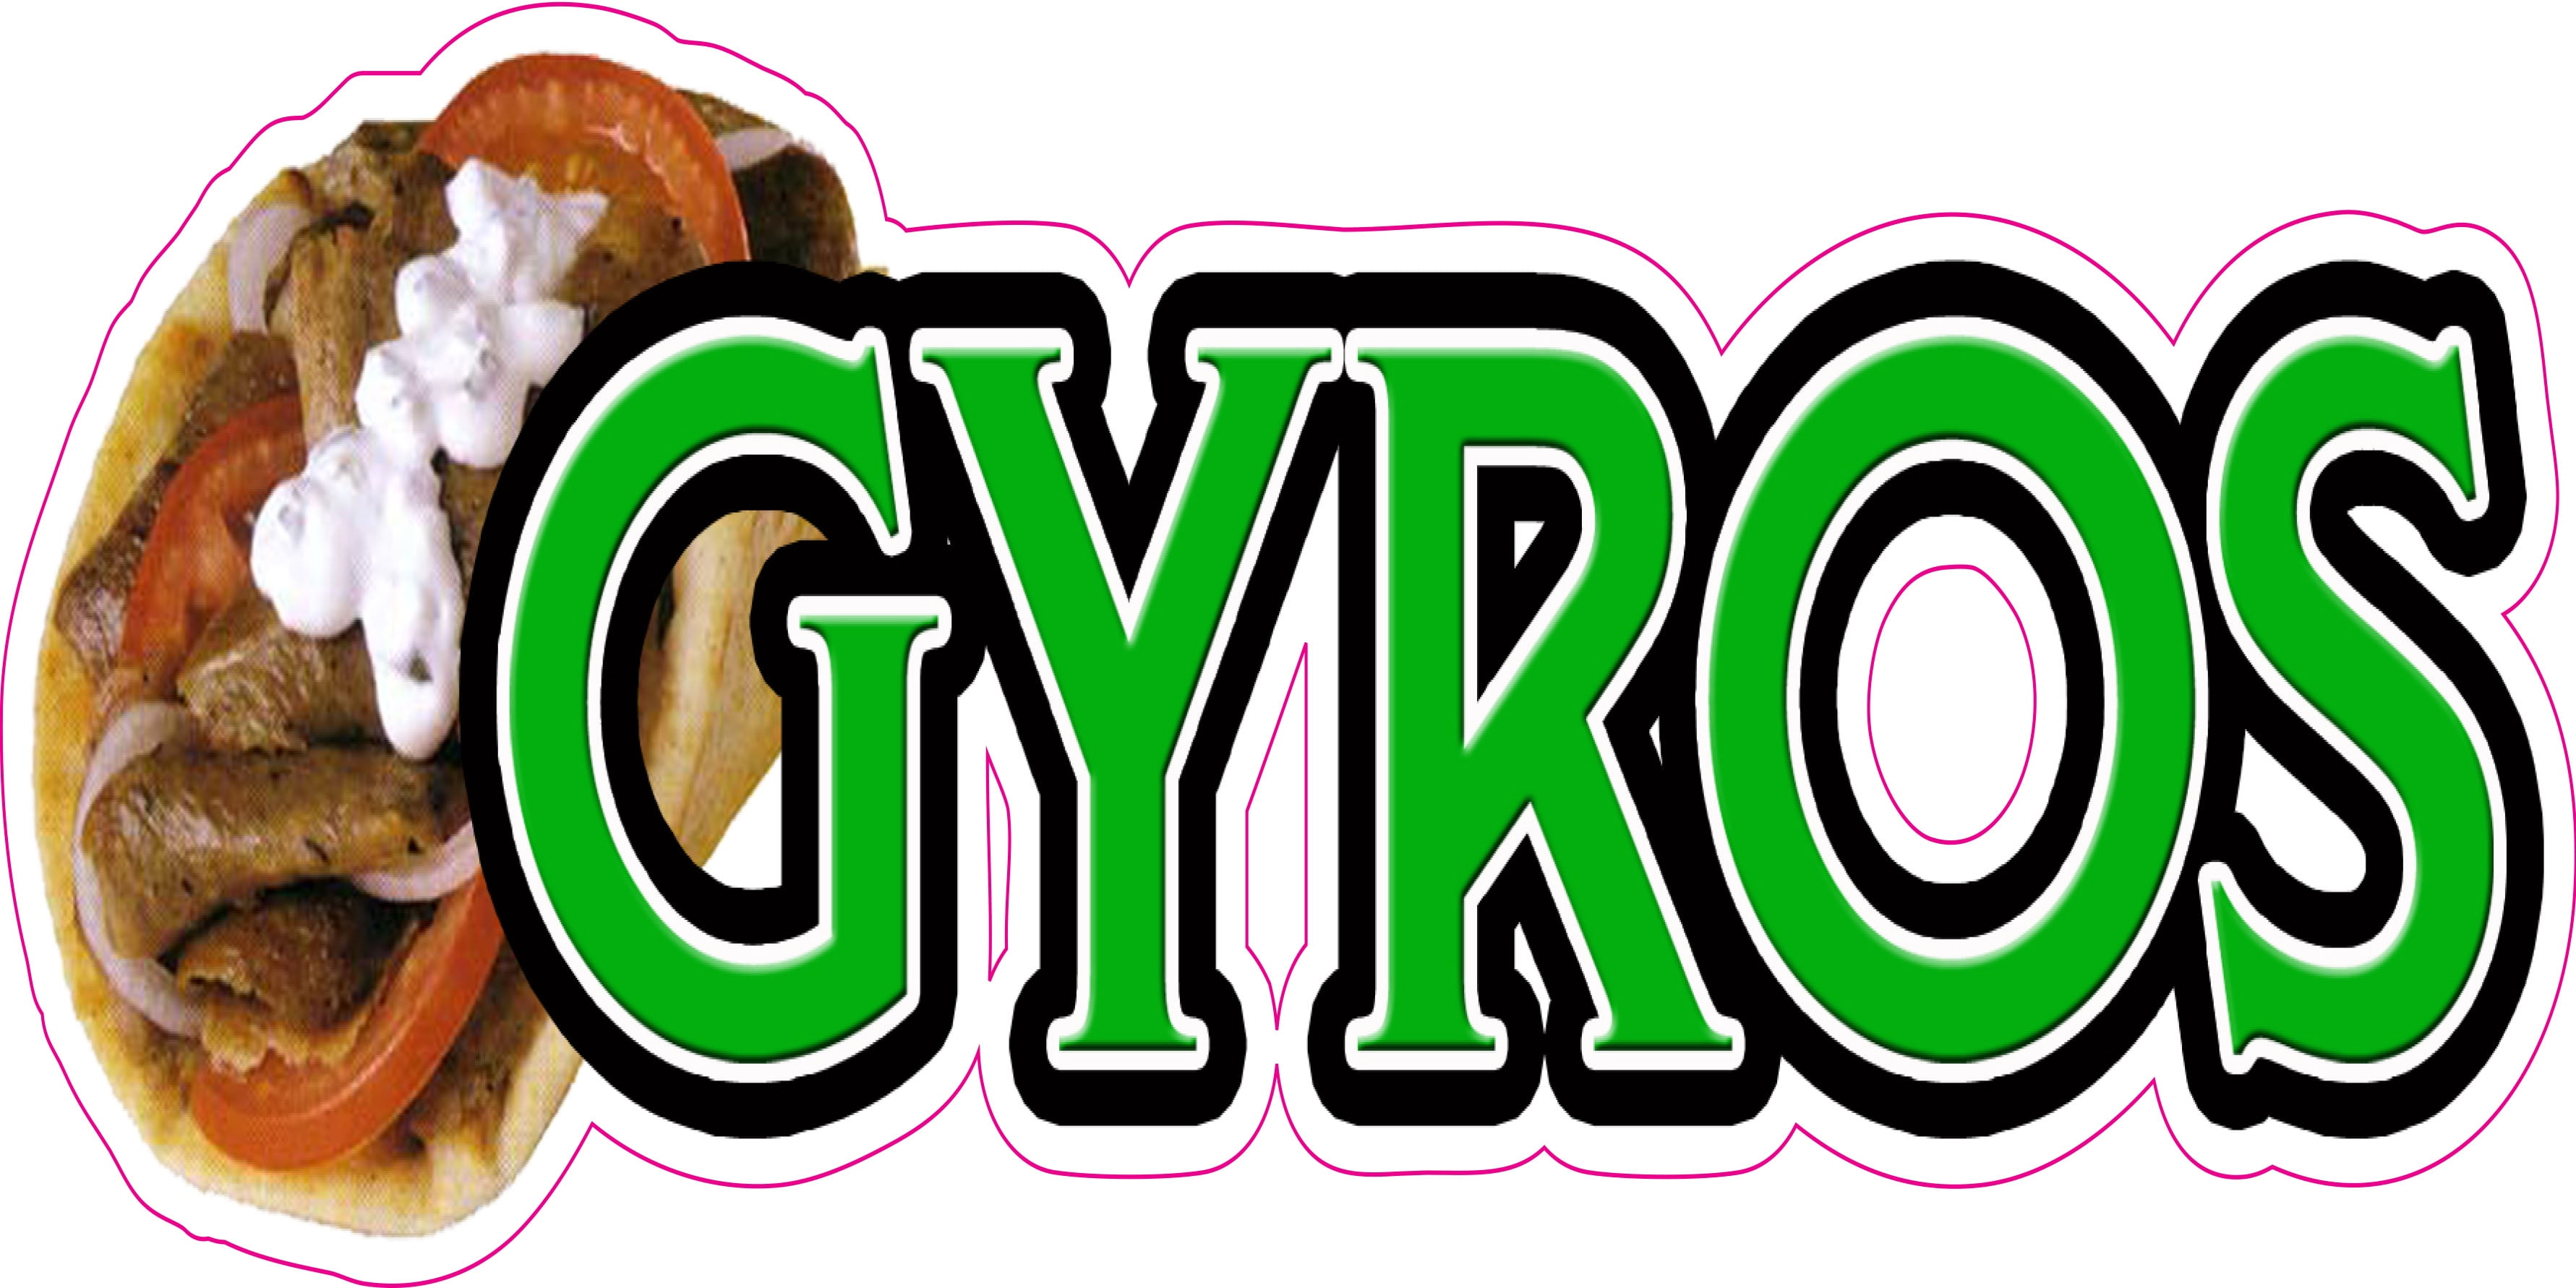 Gyro Concession Restaurant Food Truck Die-Cut Vinyl Sticker 